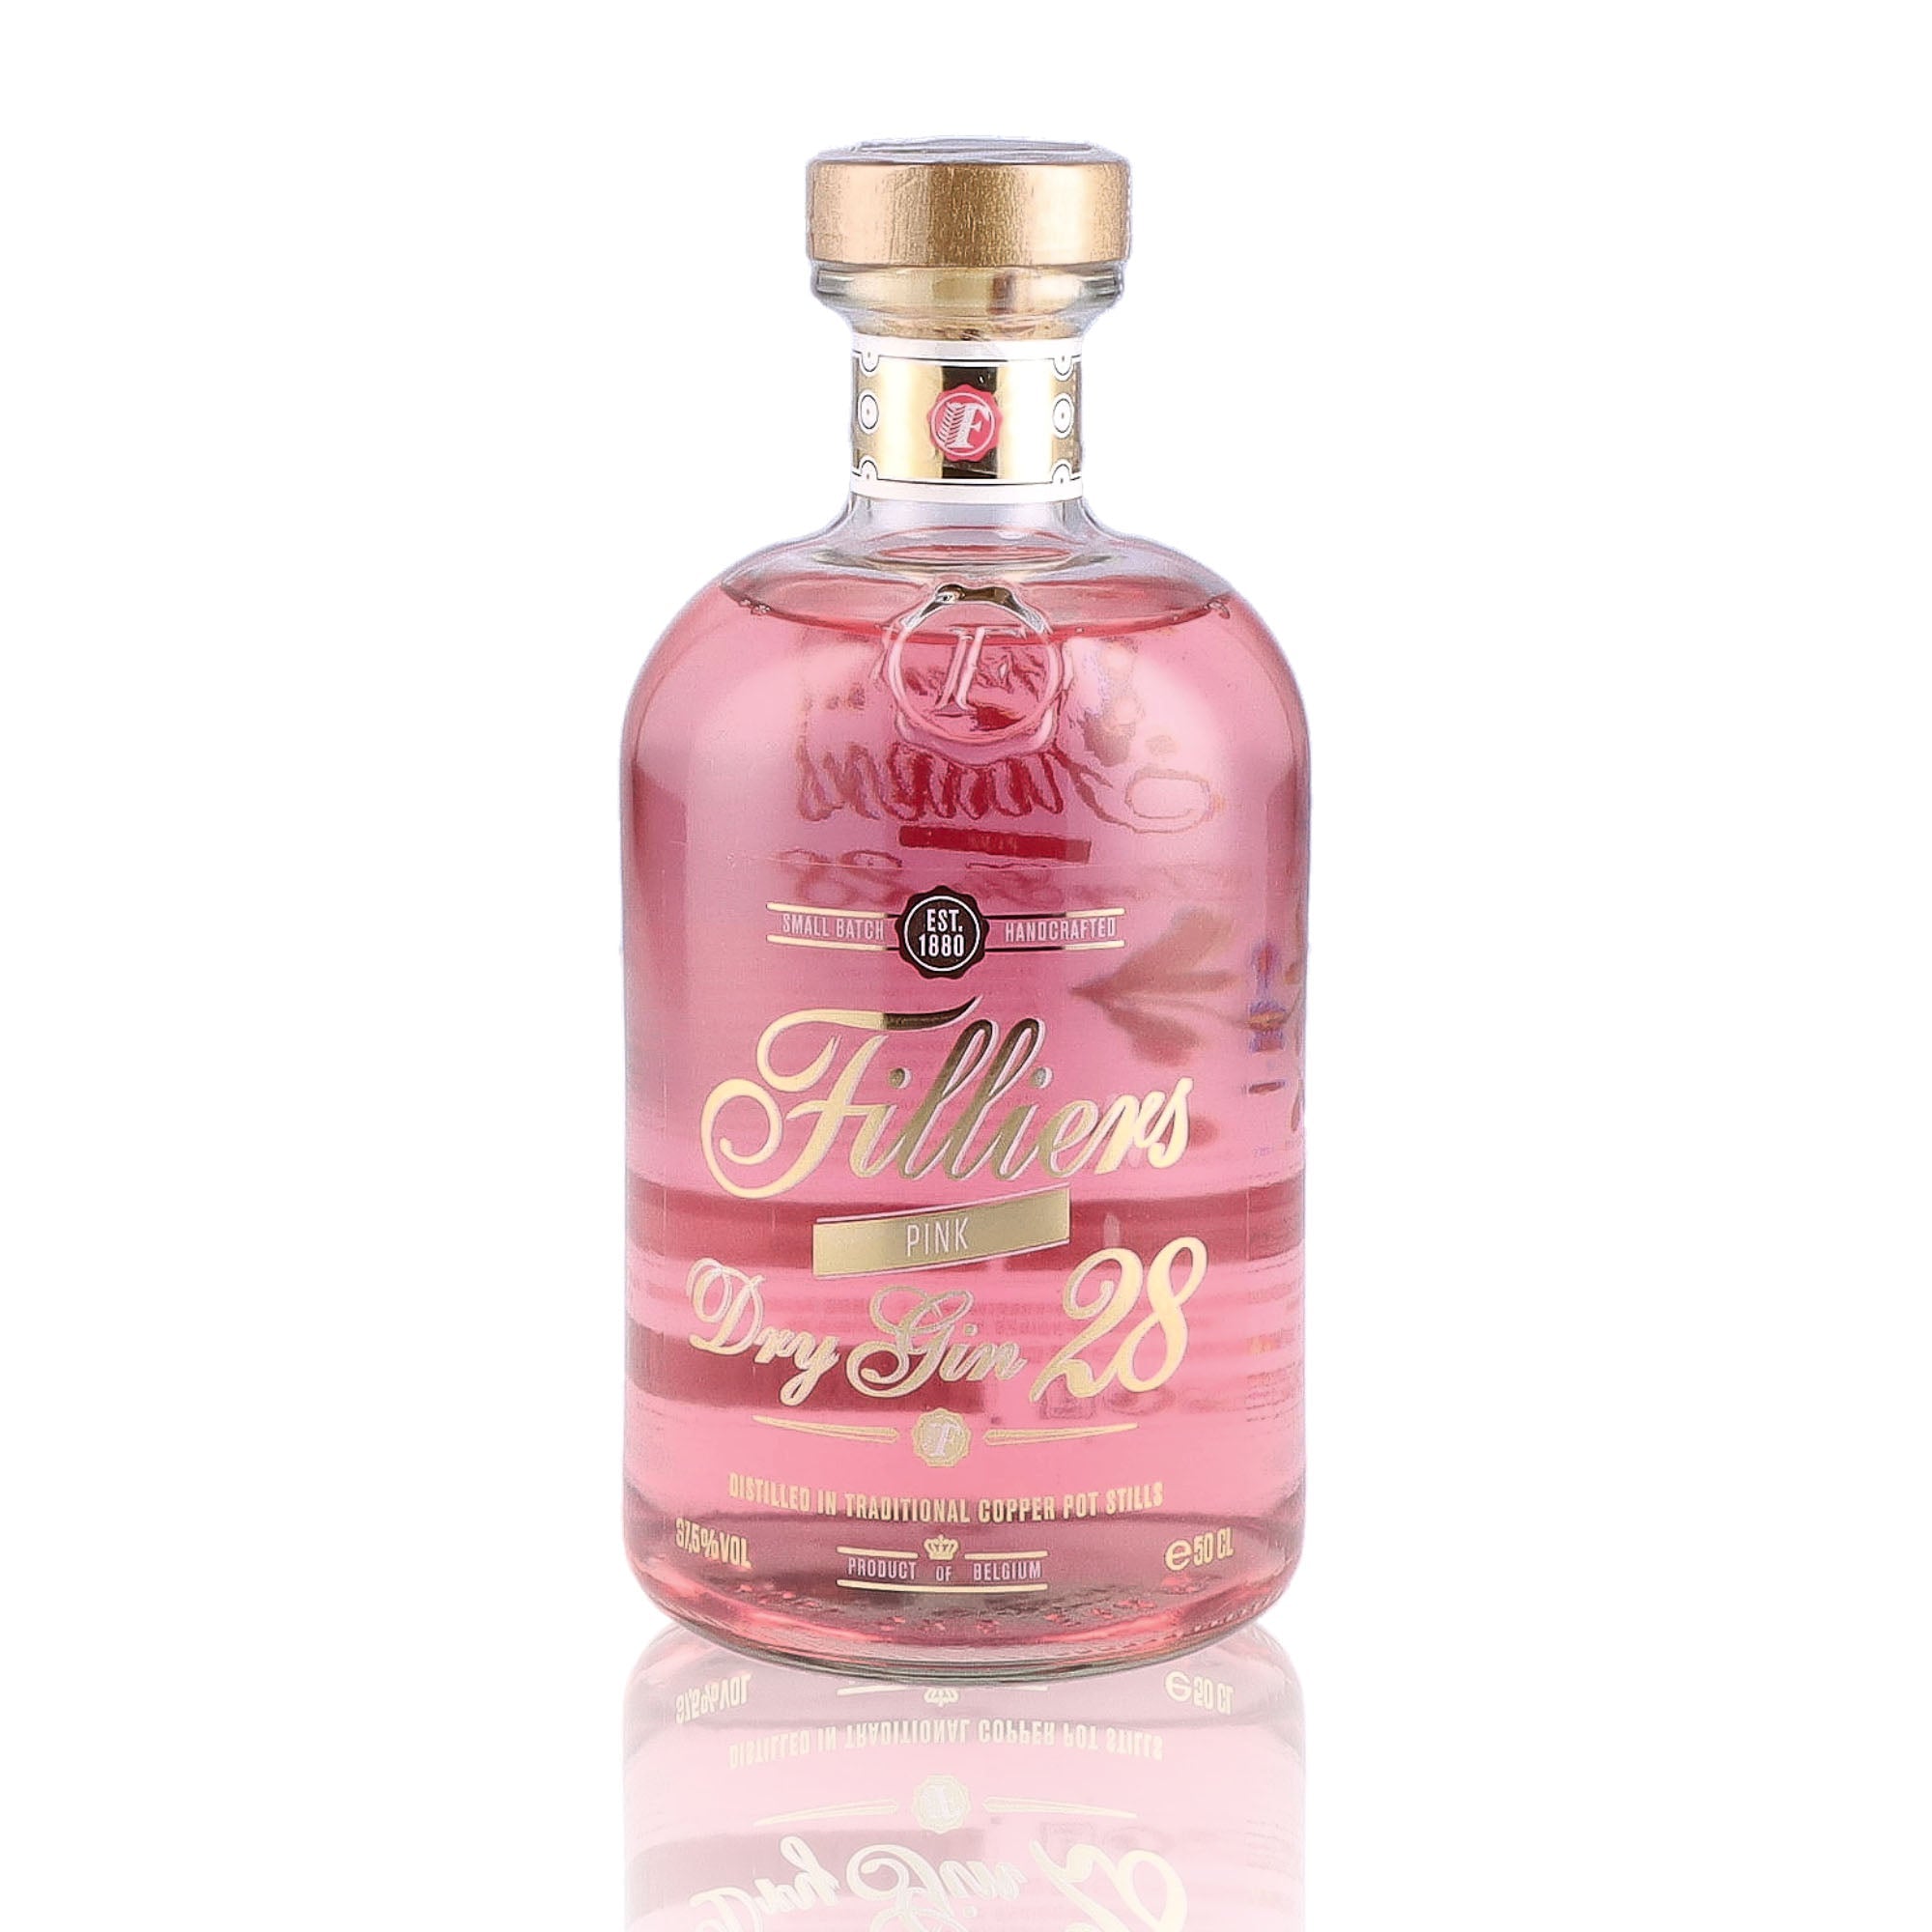 Une bouteille de Gin, de la marque Filliers, nommée Dry Gin 28 Pink.